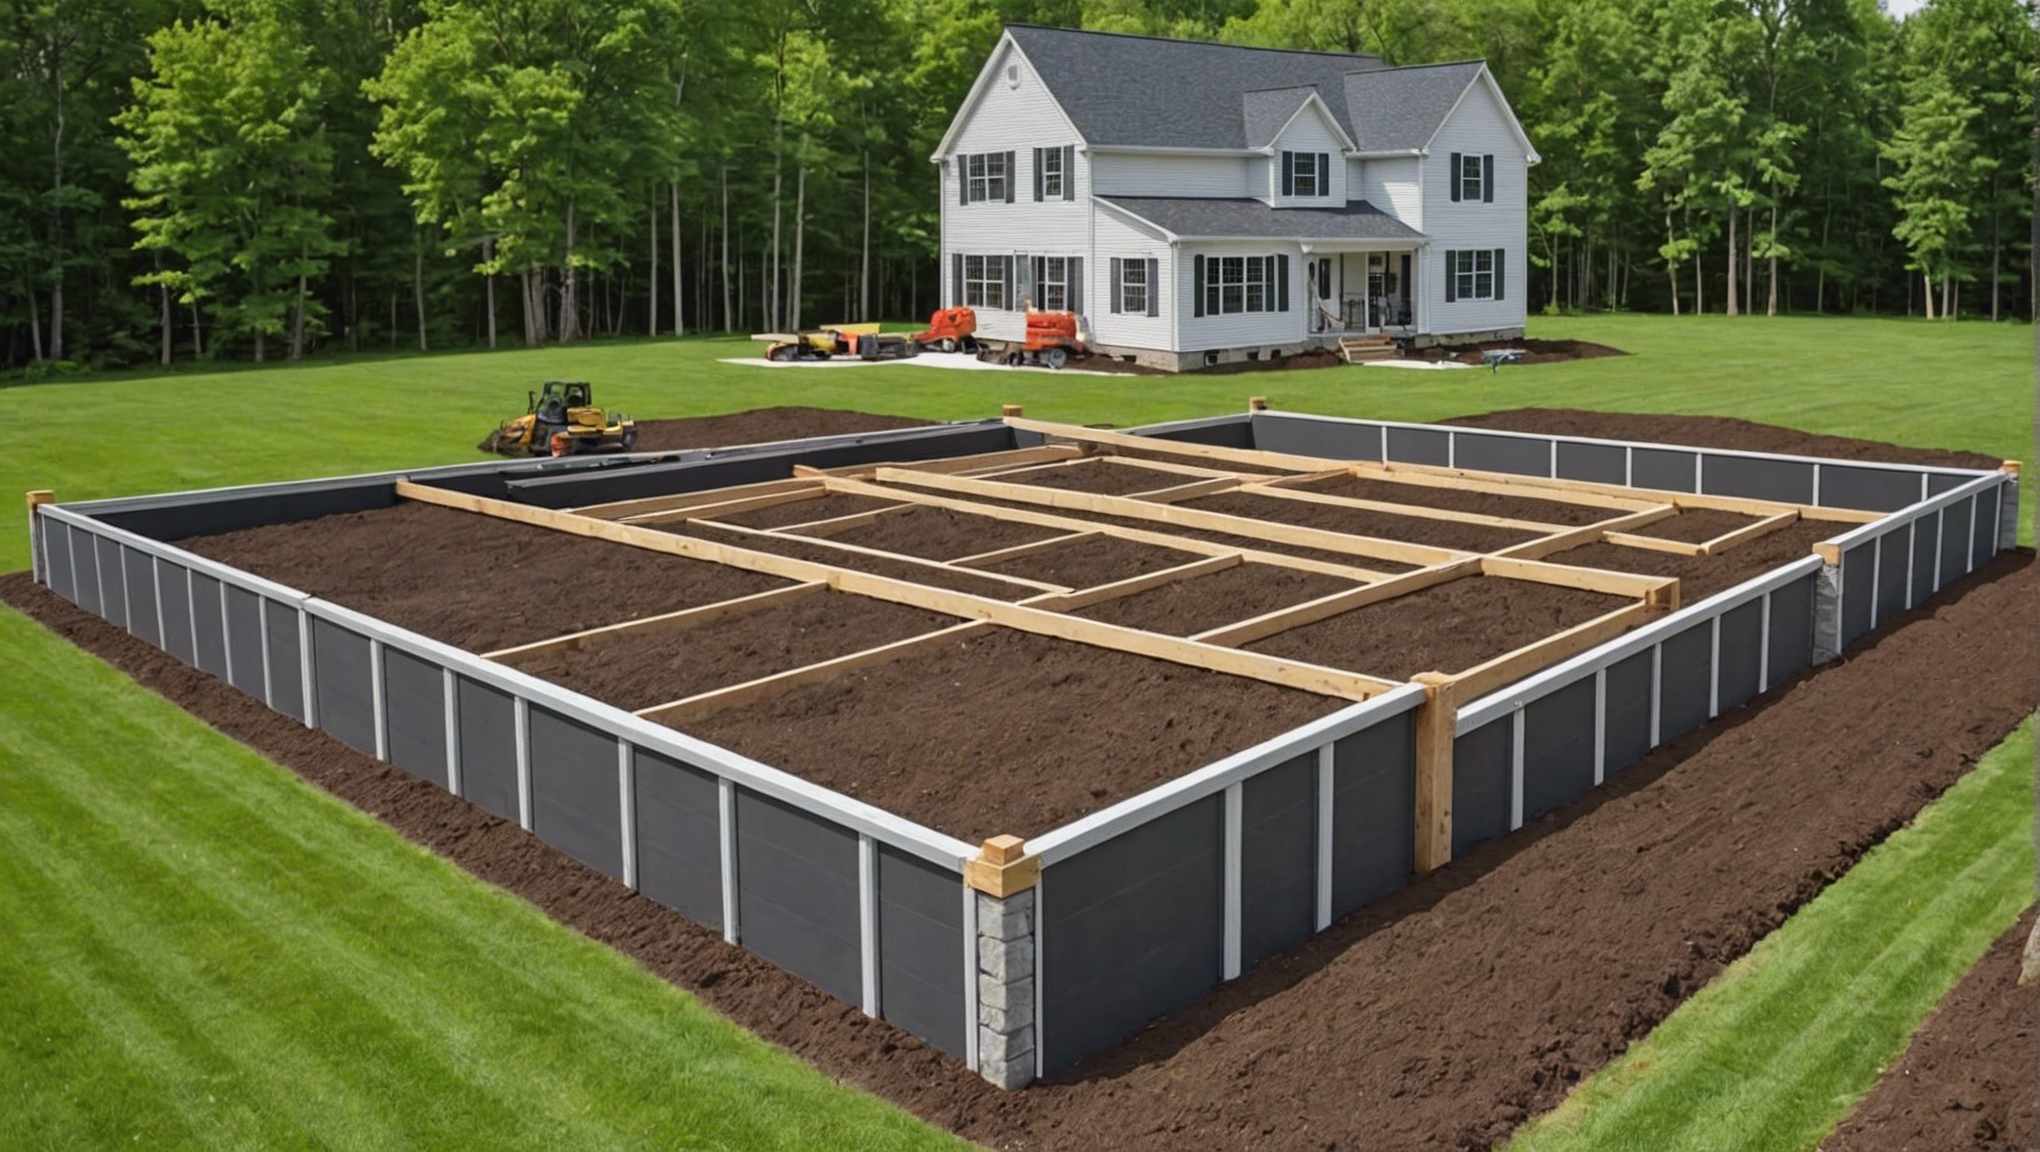 découvrez comment construire une fondation solide pour votre maison et assurez la stabilité de votre construction avec nos conseils pratiques.